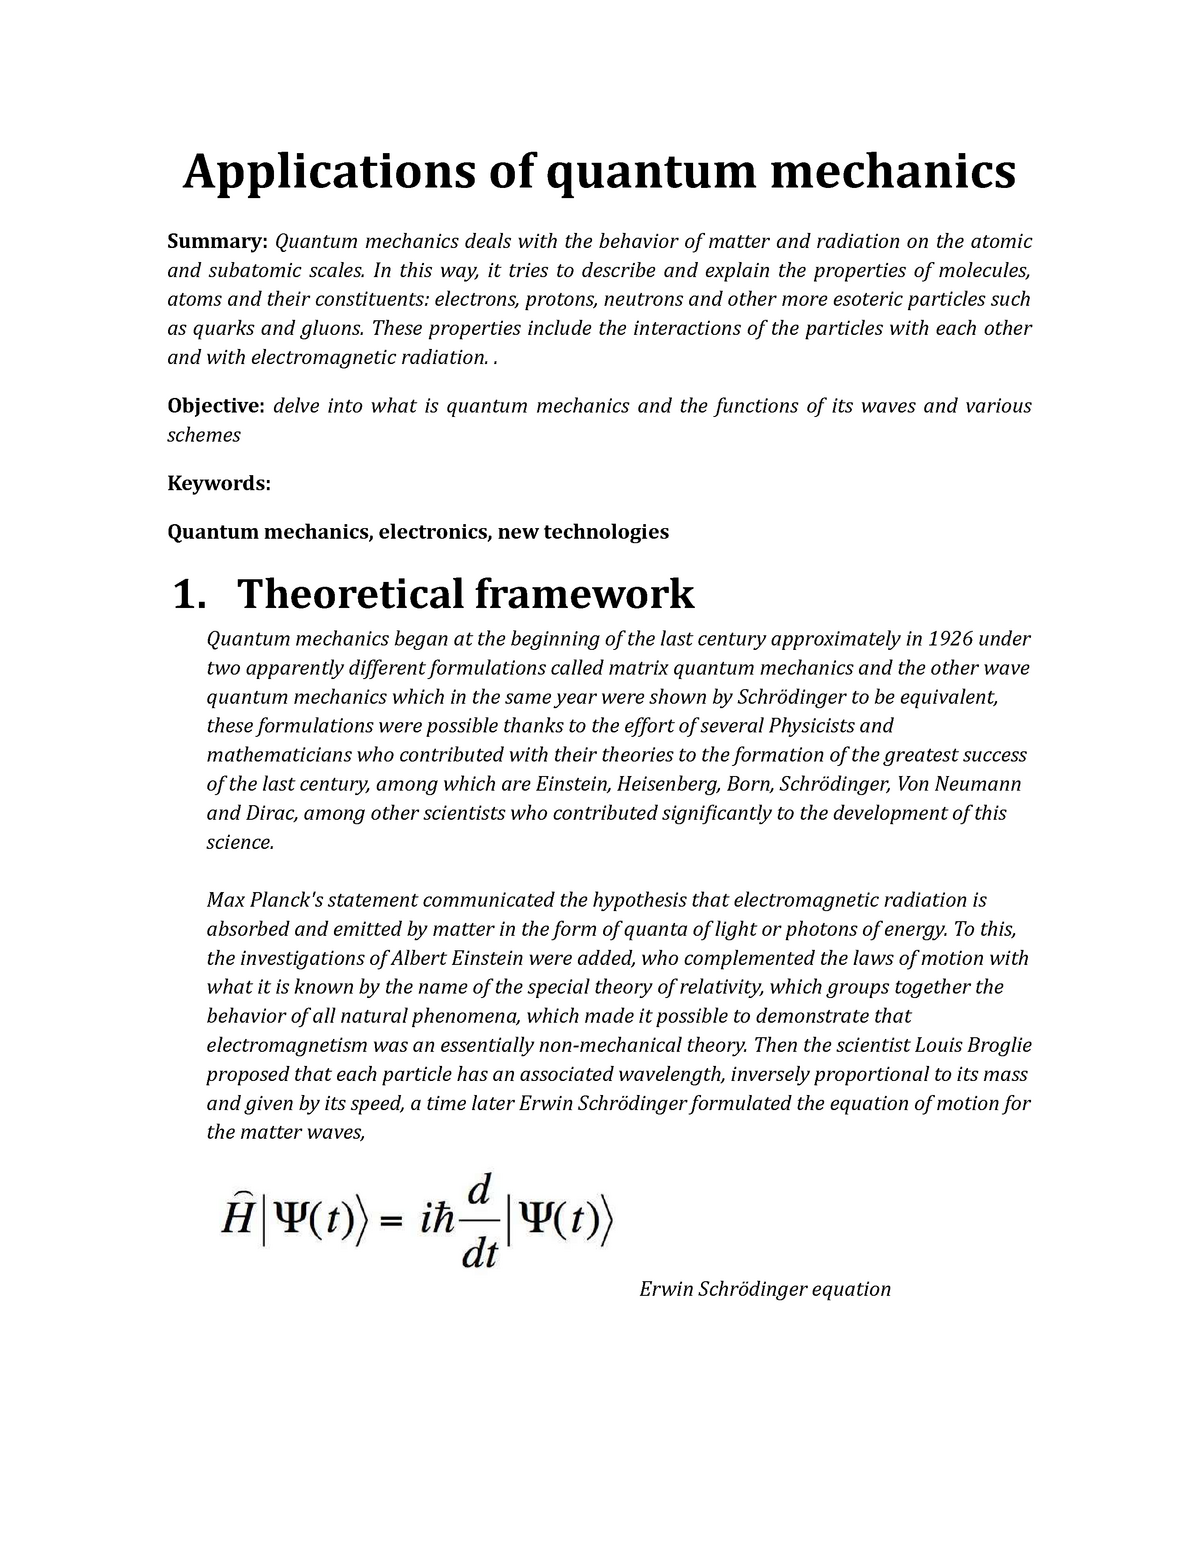 essay questions on quantum mechanics